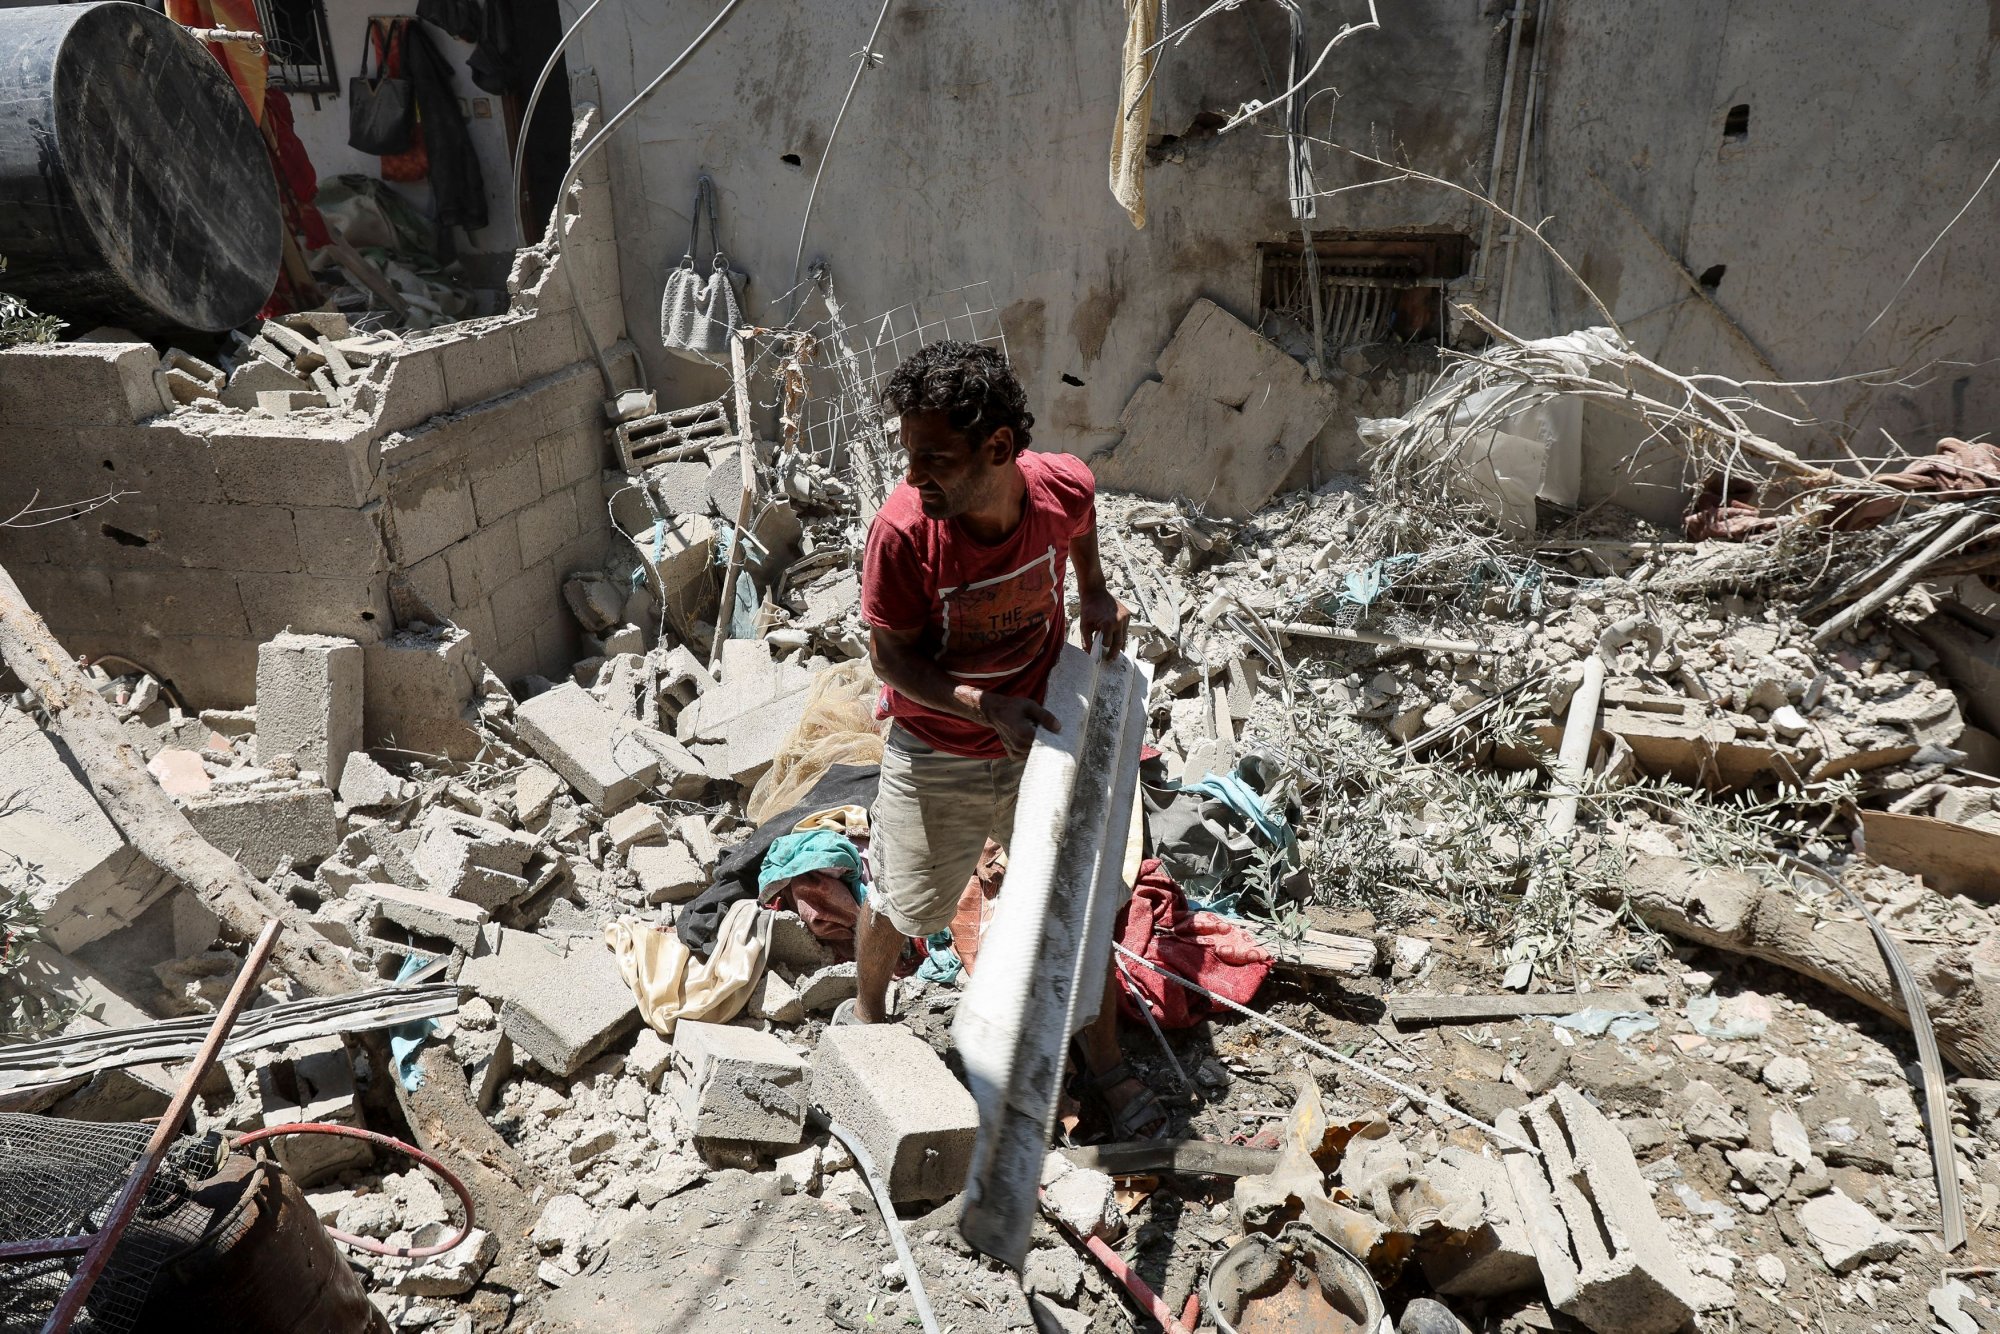 Γάζα: Έκκληση για κατάπαυση του πυρός απηύθυνε ο Βρετανός ΥΠΕΞ από την Ιερουσαλήμ